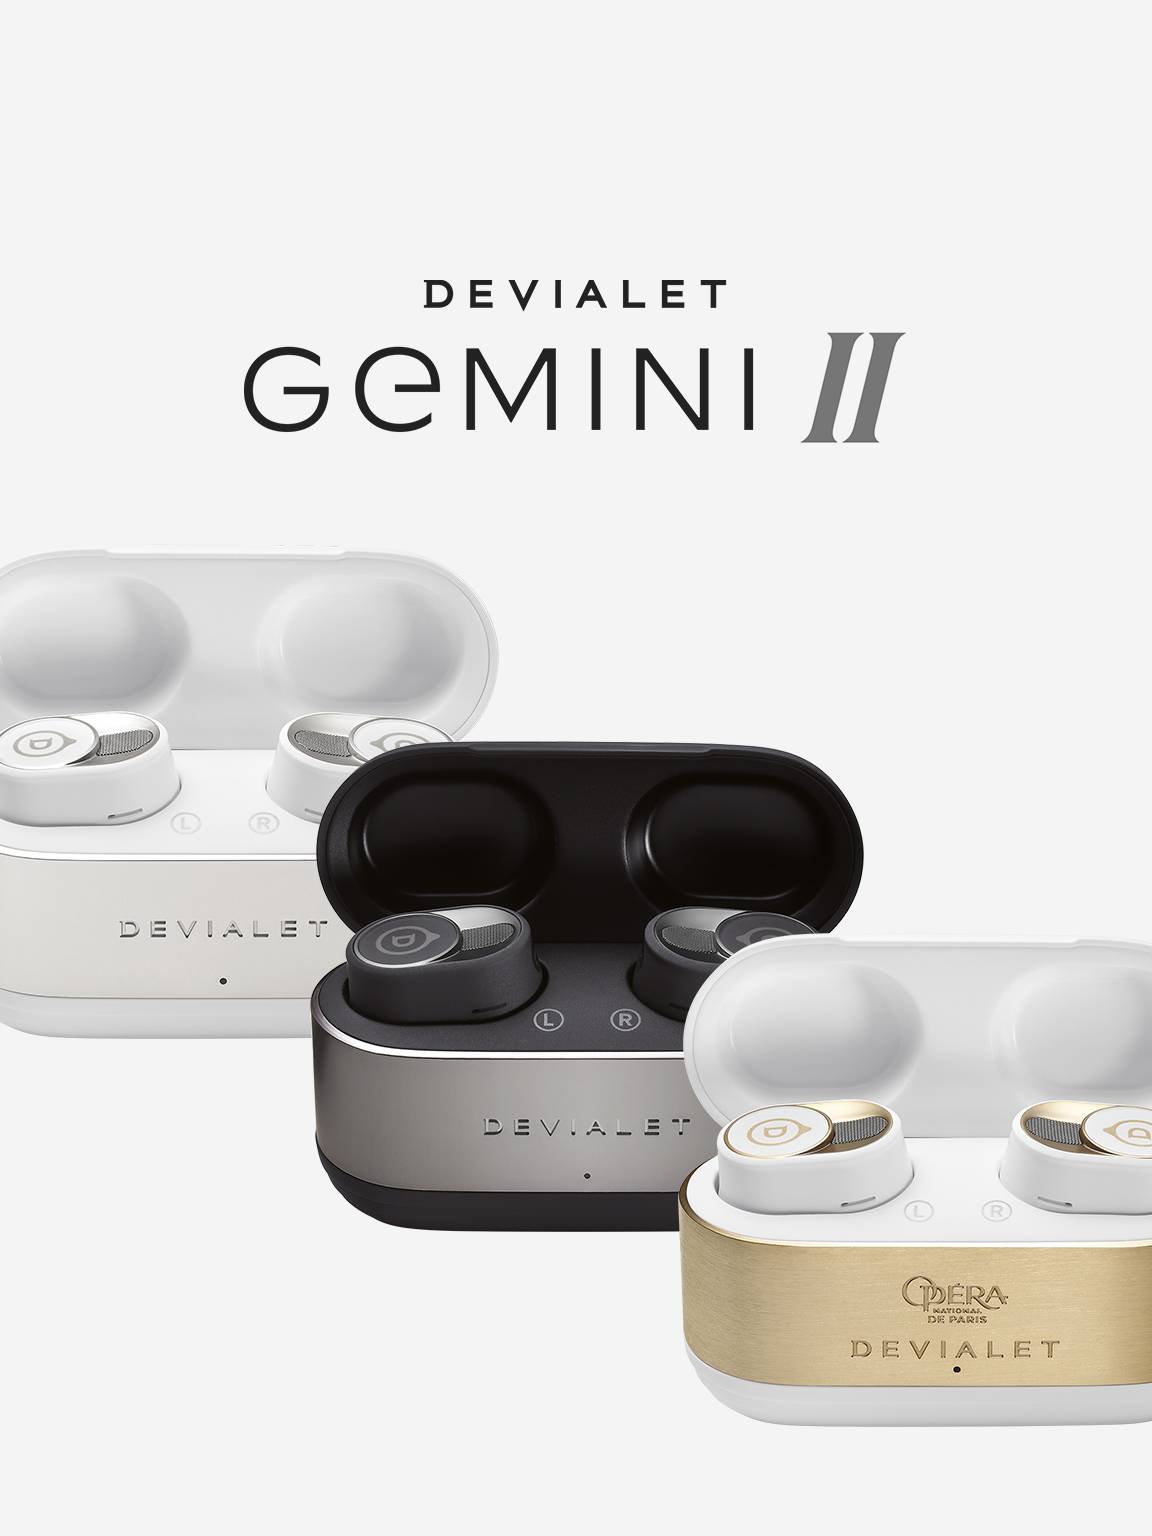 Devialet Gemini II : des écouteurs luxueux à la française - Les